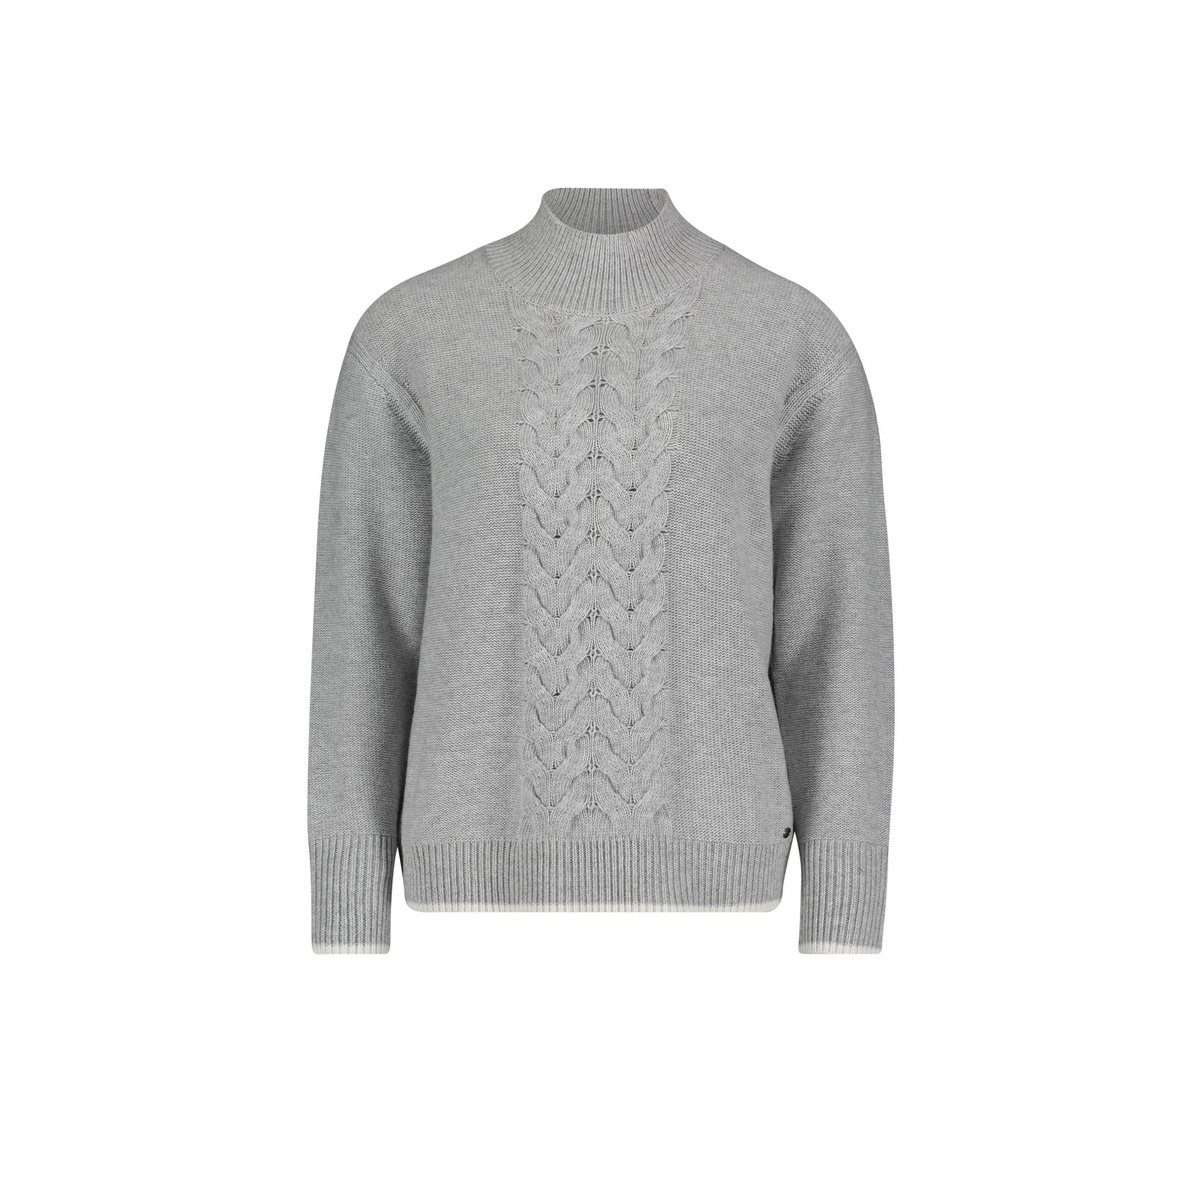 Длинный свитер серебристого цвета стандартного кроя (1 шт.)